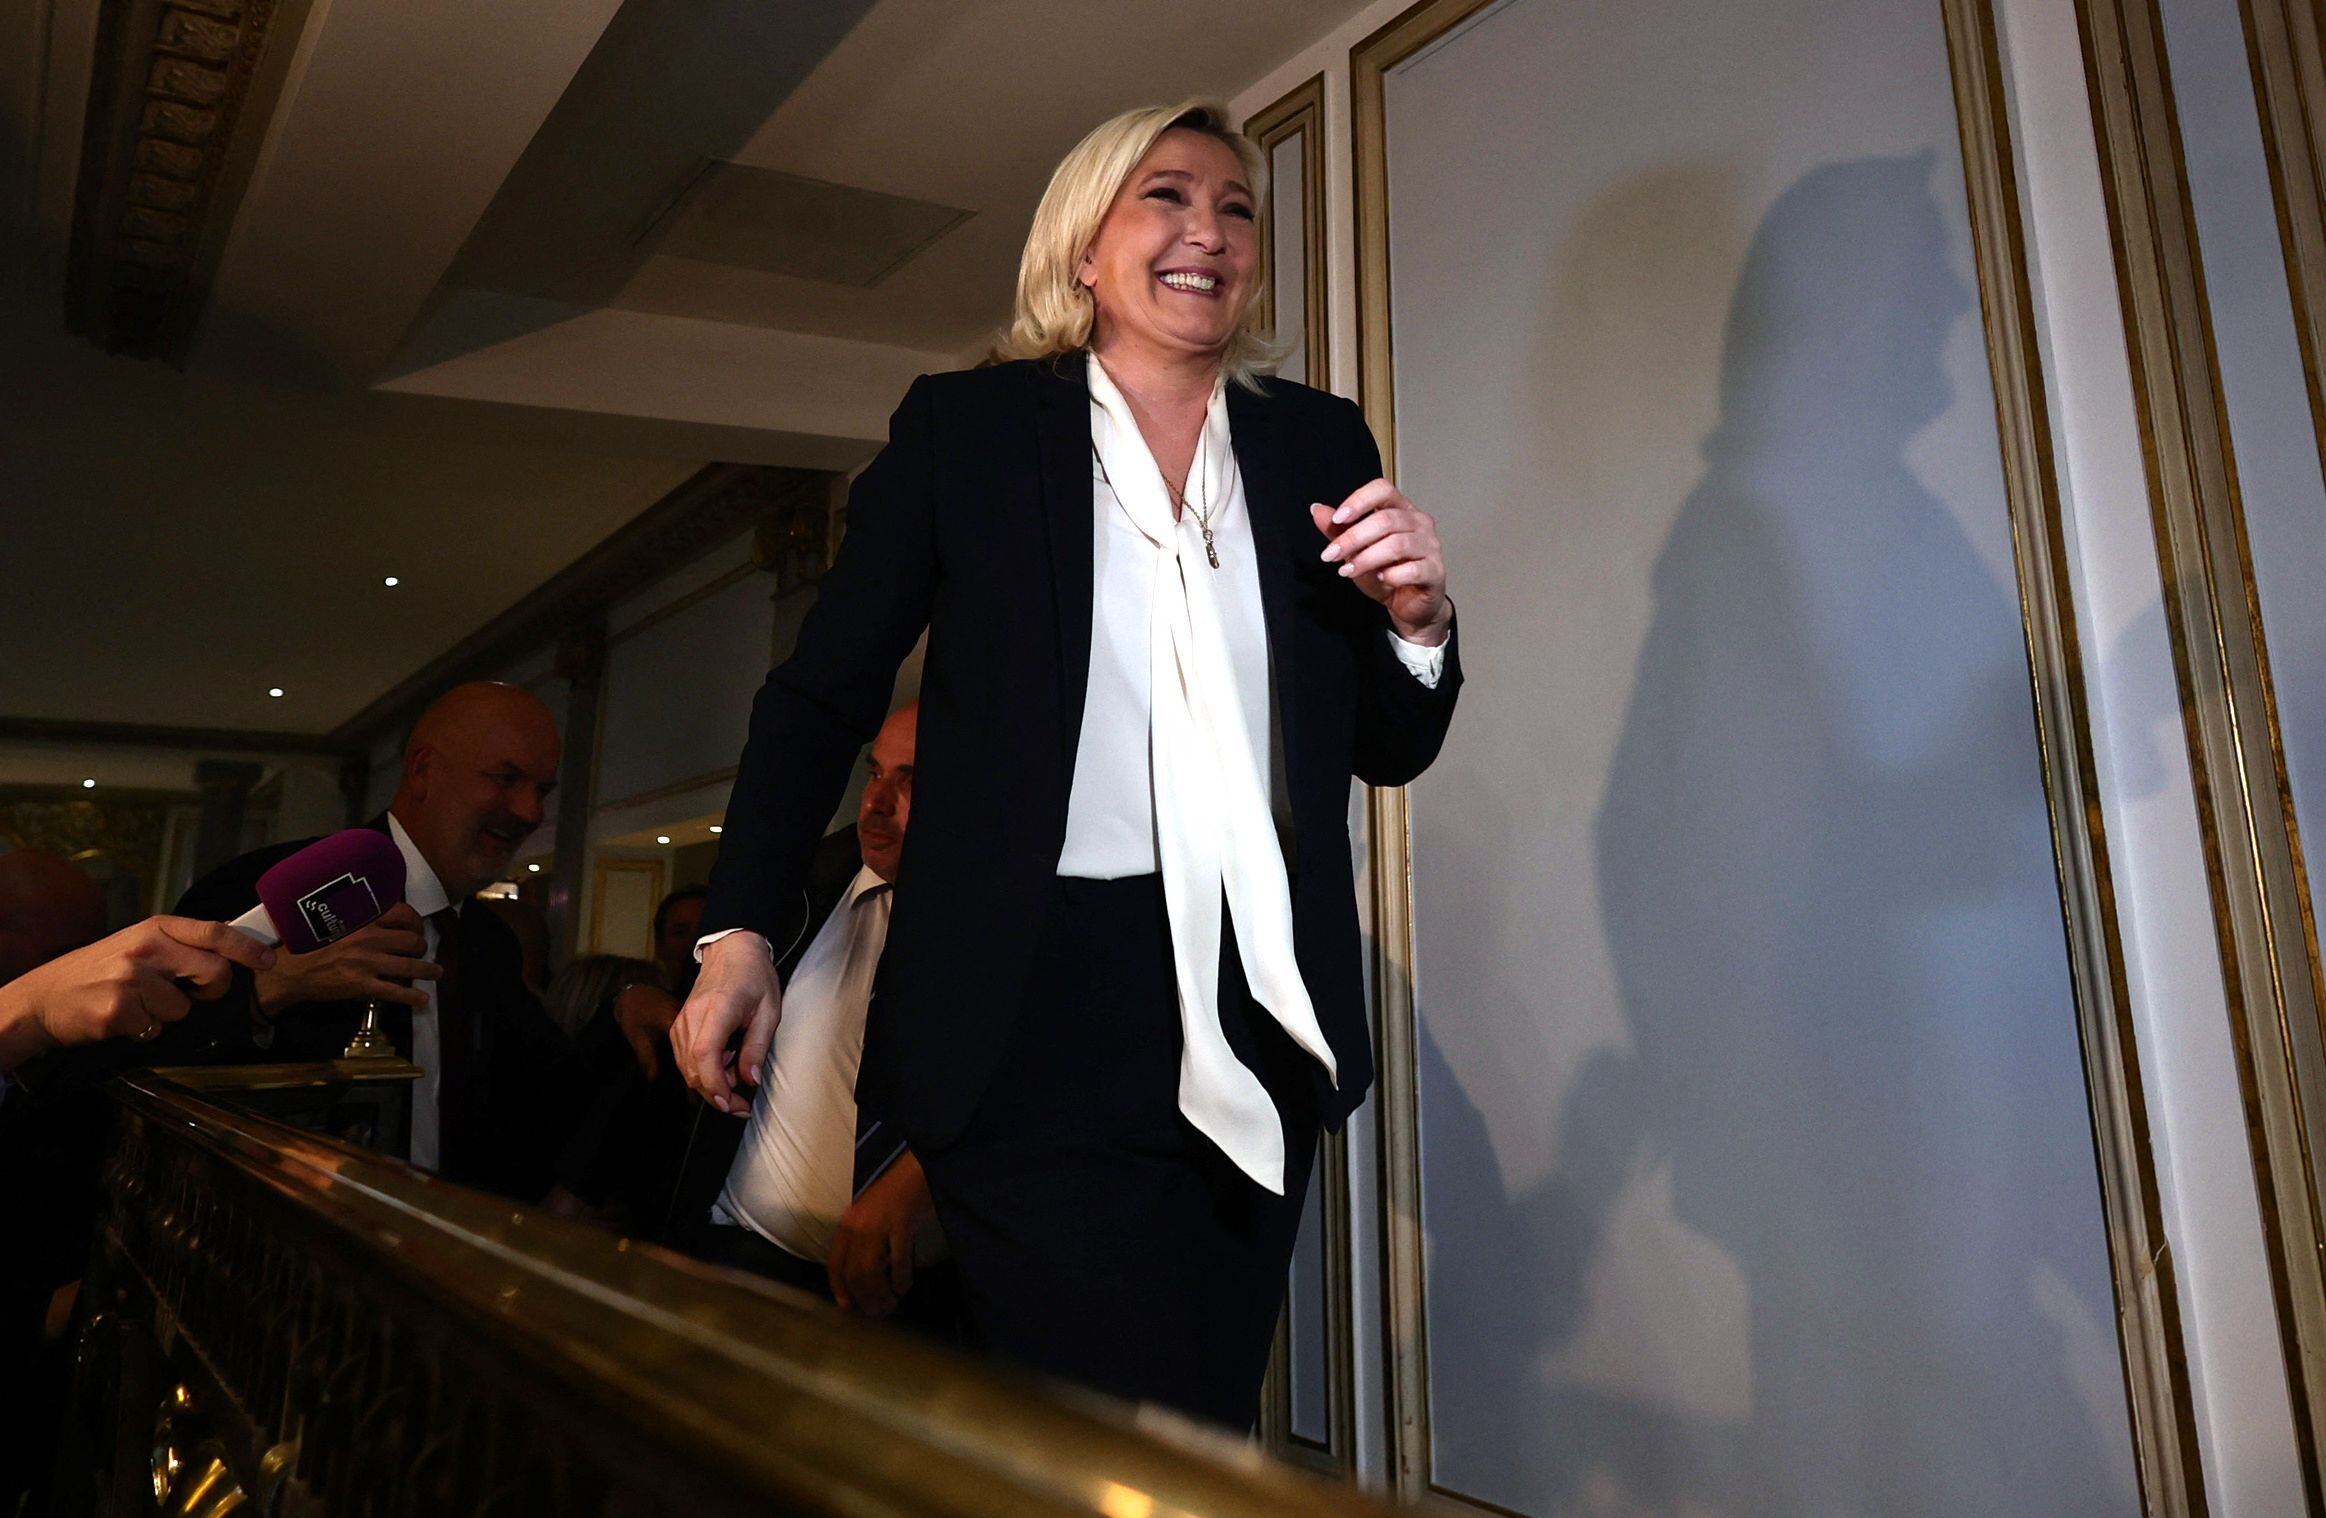 Marine Le Pen reconoció la derrota y felicitó a su adversario en las elecciones francesas (REUTERS/Sarah Meyssonnier)